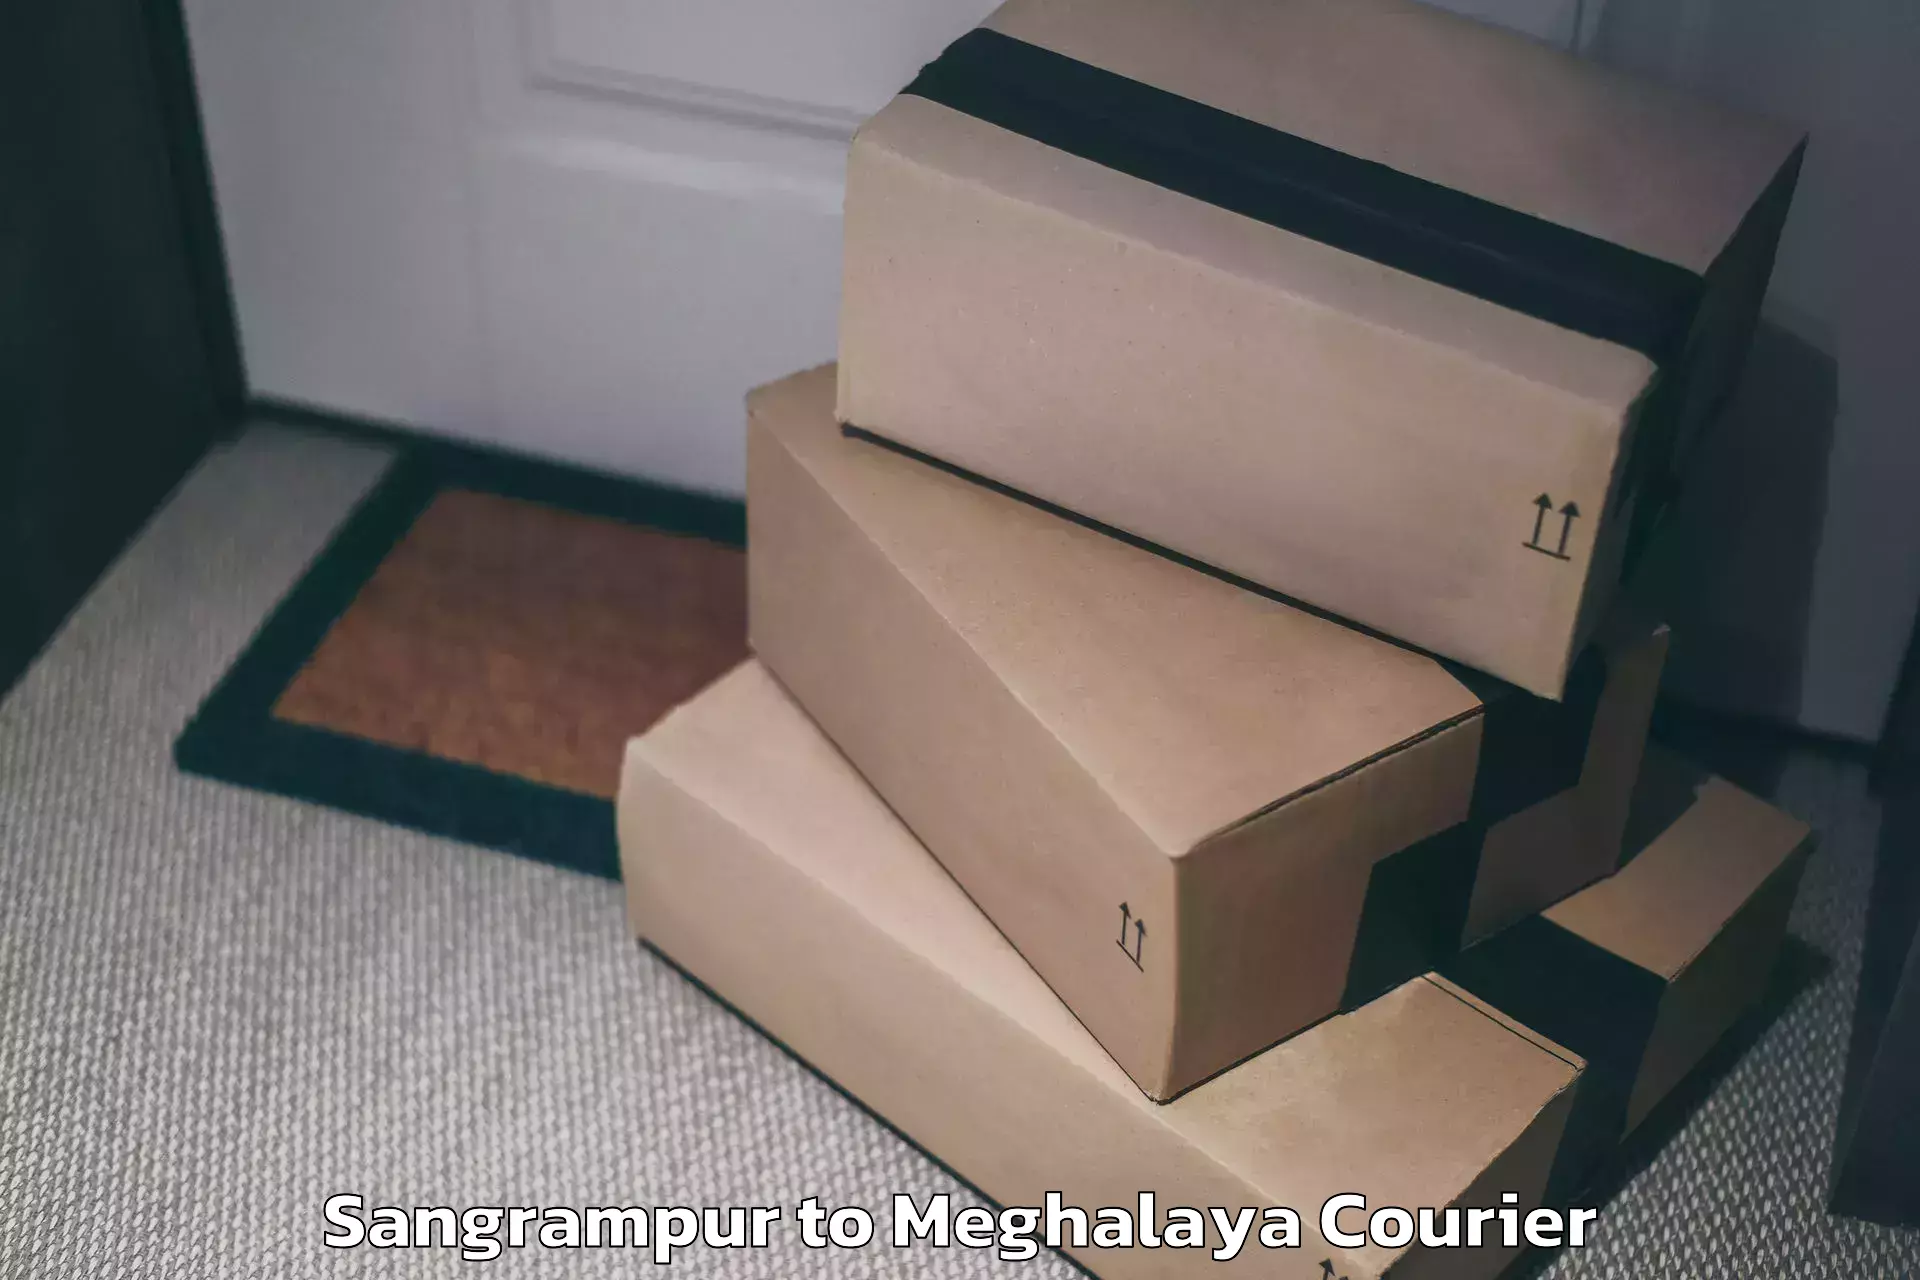 Luggage shipping service Sangrampur to Meghalaya